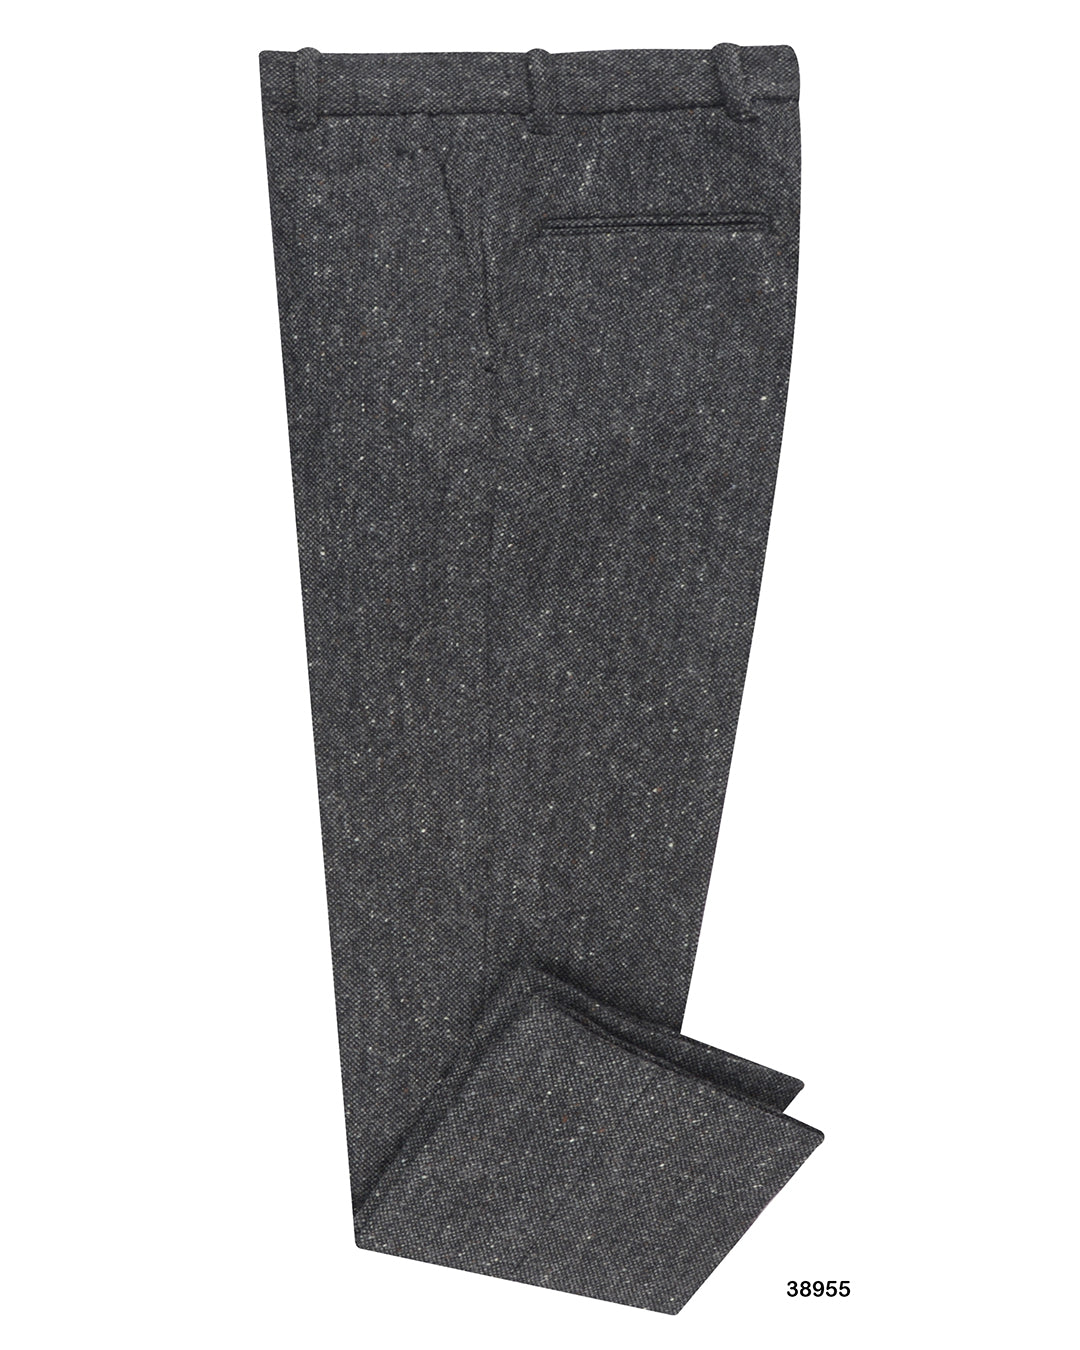 Wool Tweed Primrose Trousers in Black